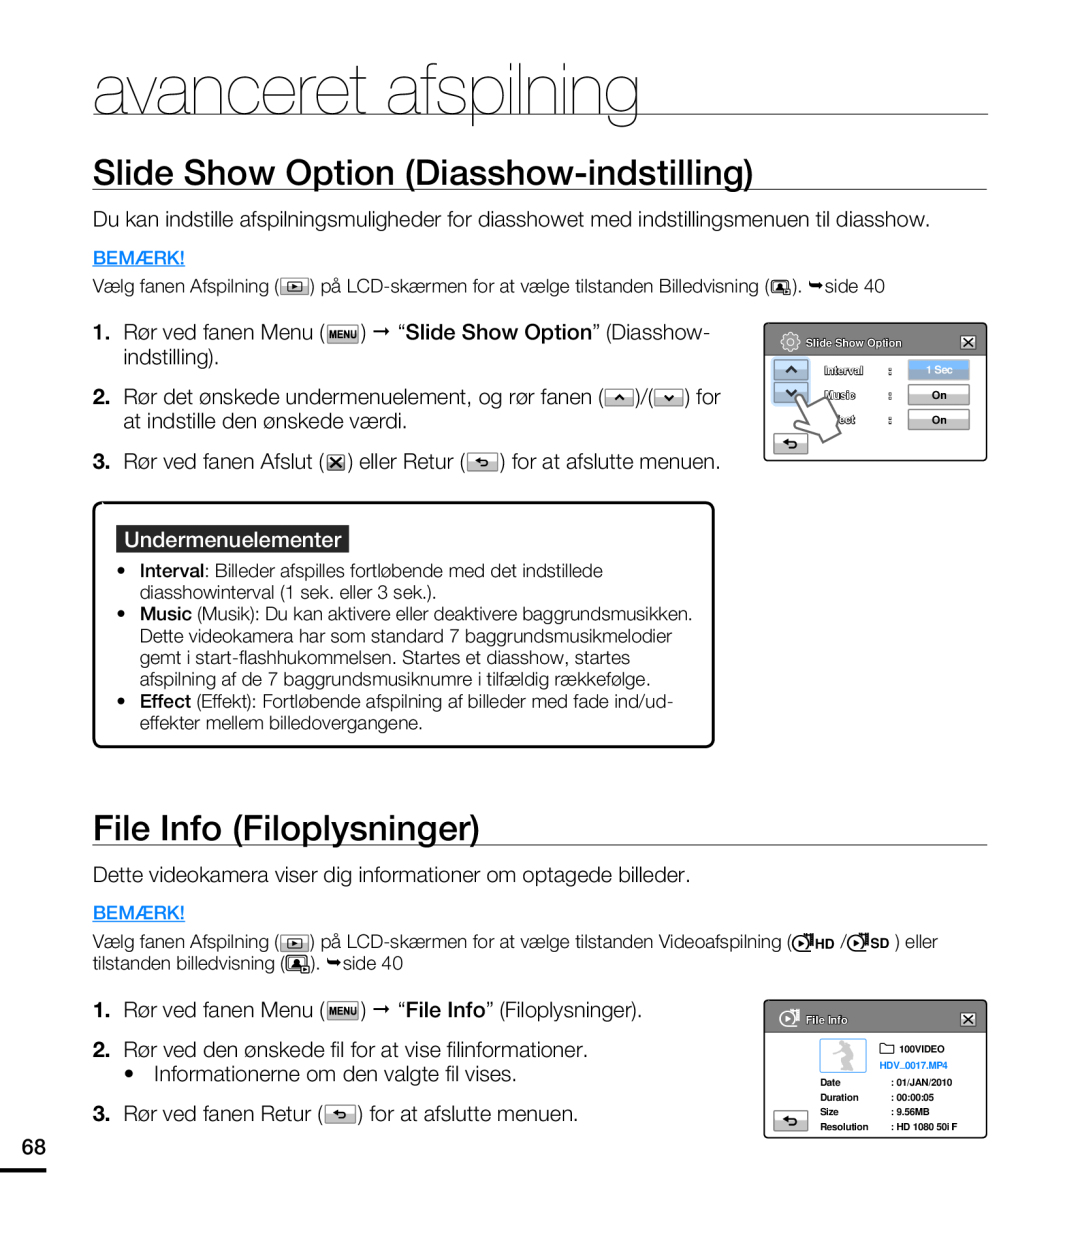 Samsung HMX-T10WP/EDC manual Slide Show Option Diasshow-indstilling, File Info Filoplysninger, Rør ved fanen Menu, Bemærk 